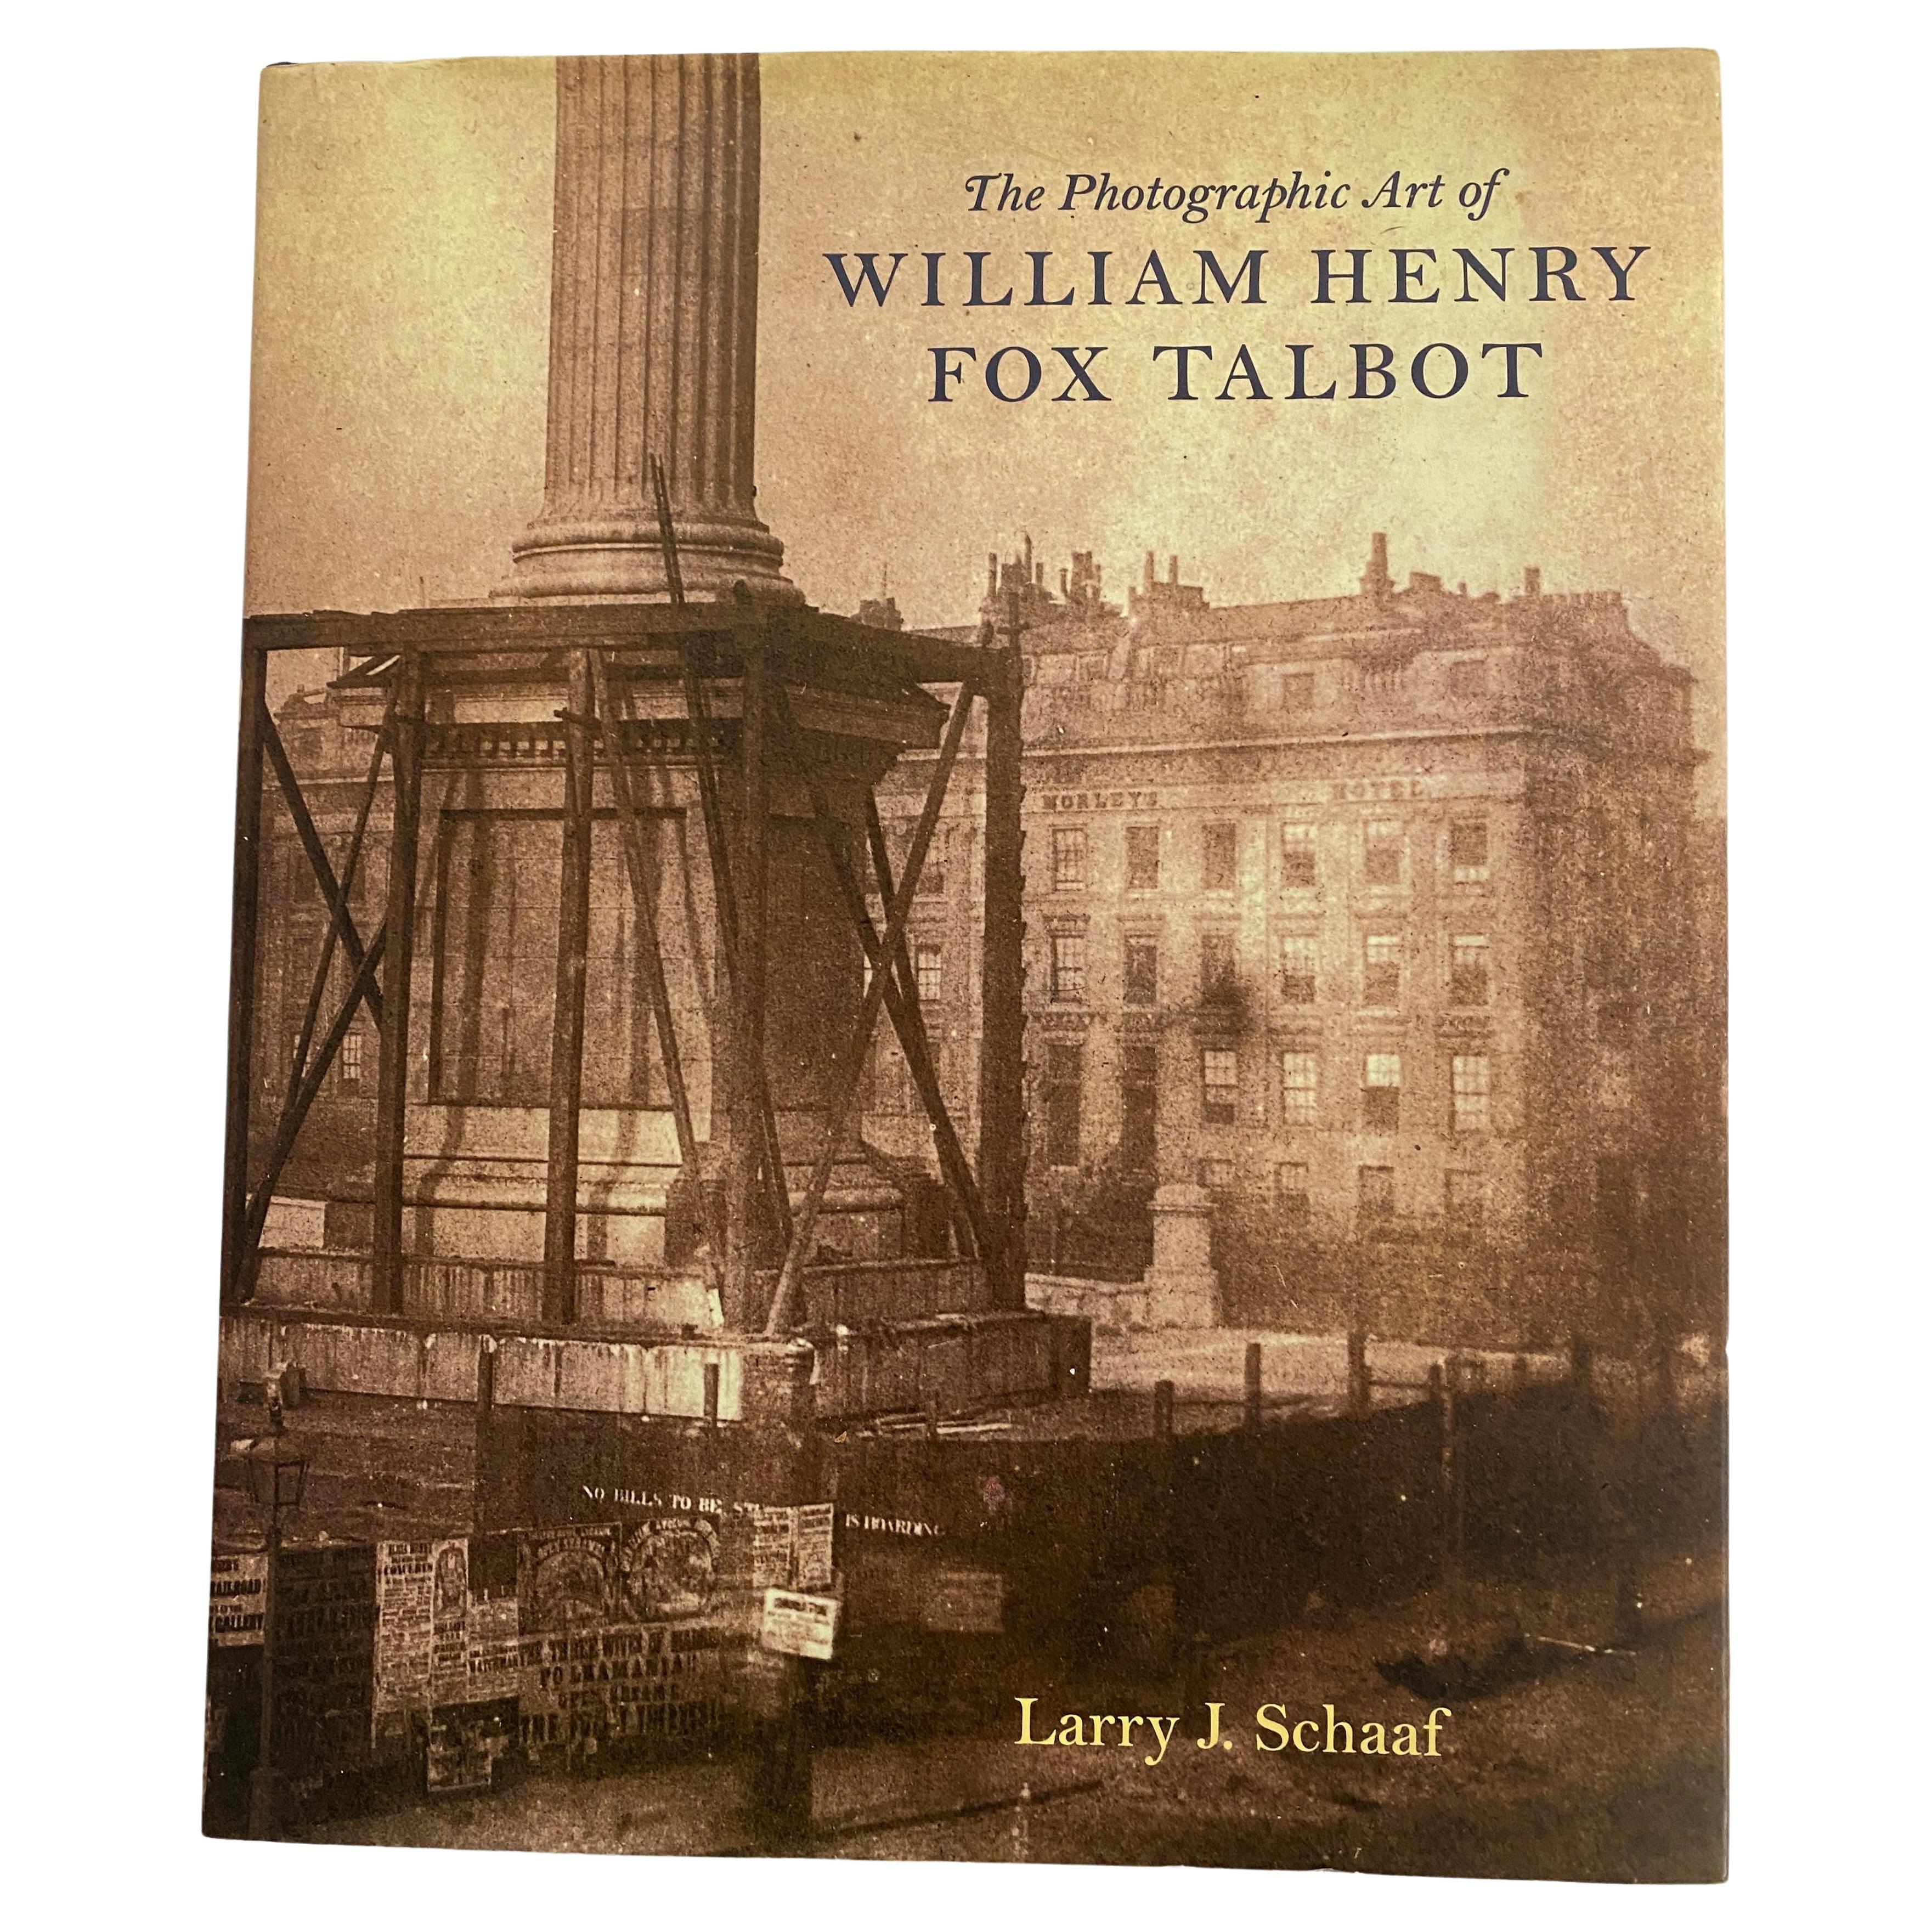 L'art photographique de William Henry Fox Talbot par Larry J. Schaaf (livre)